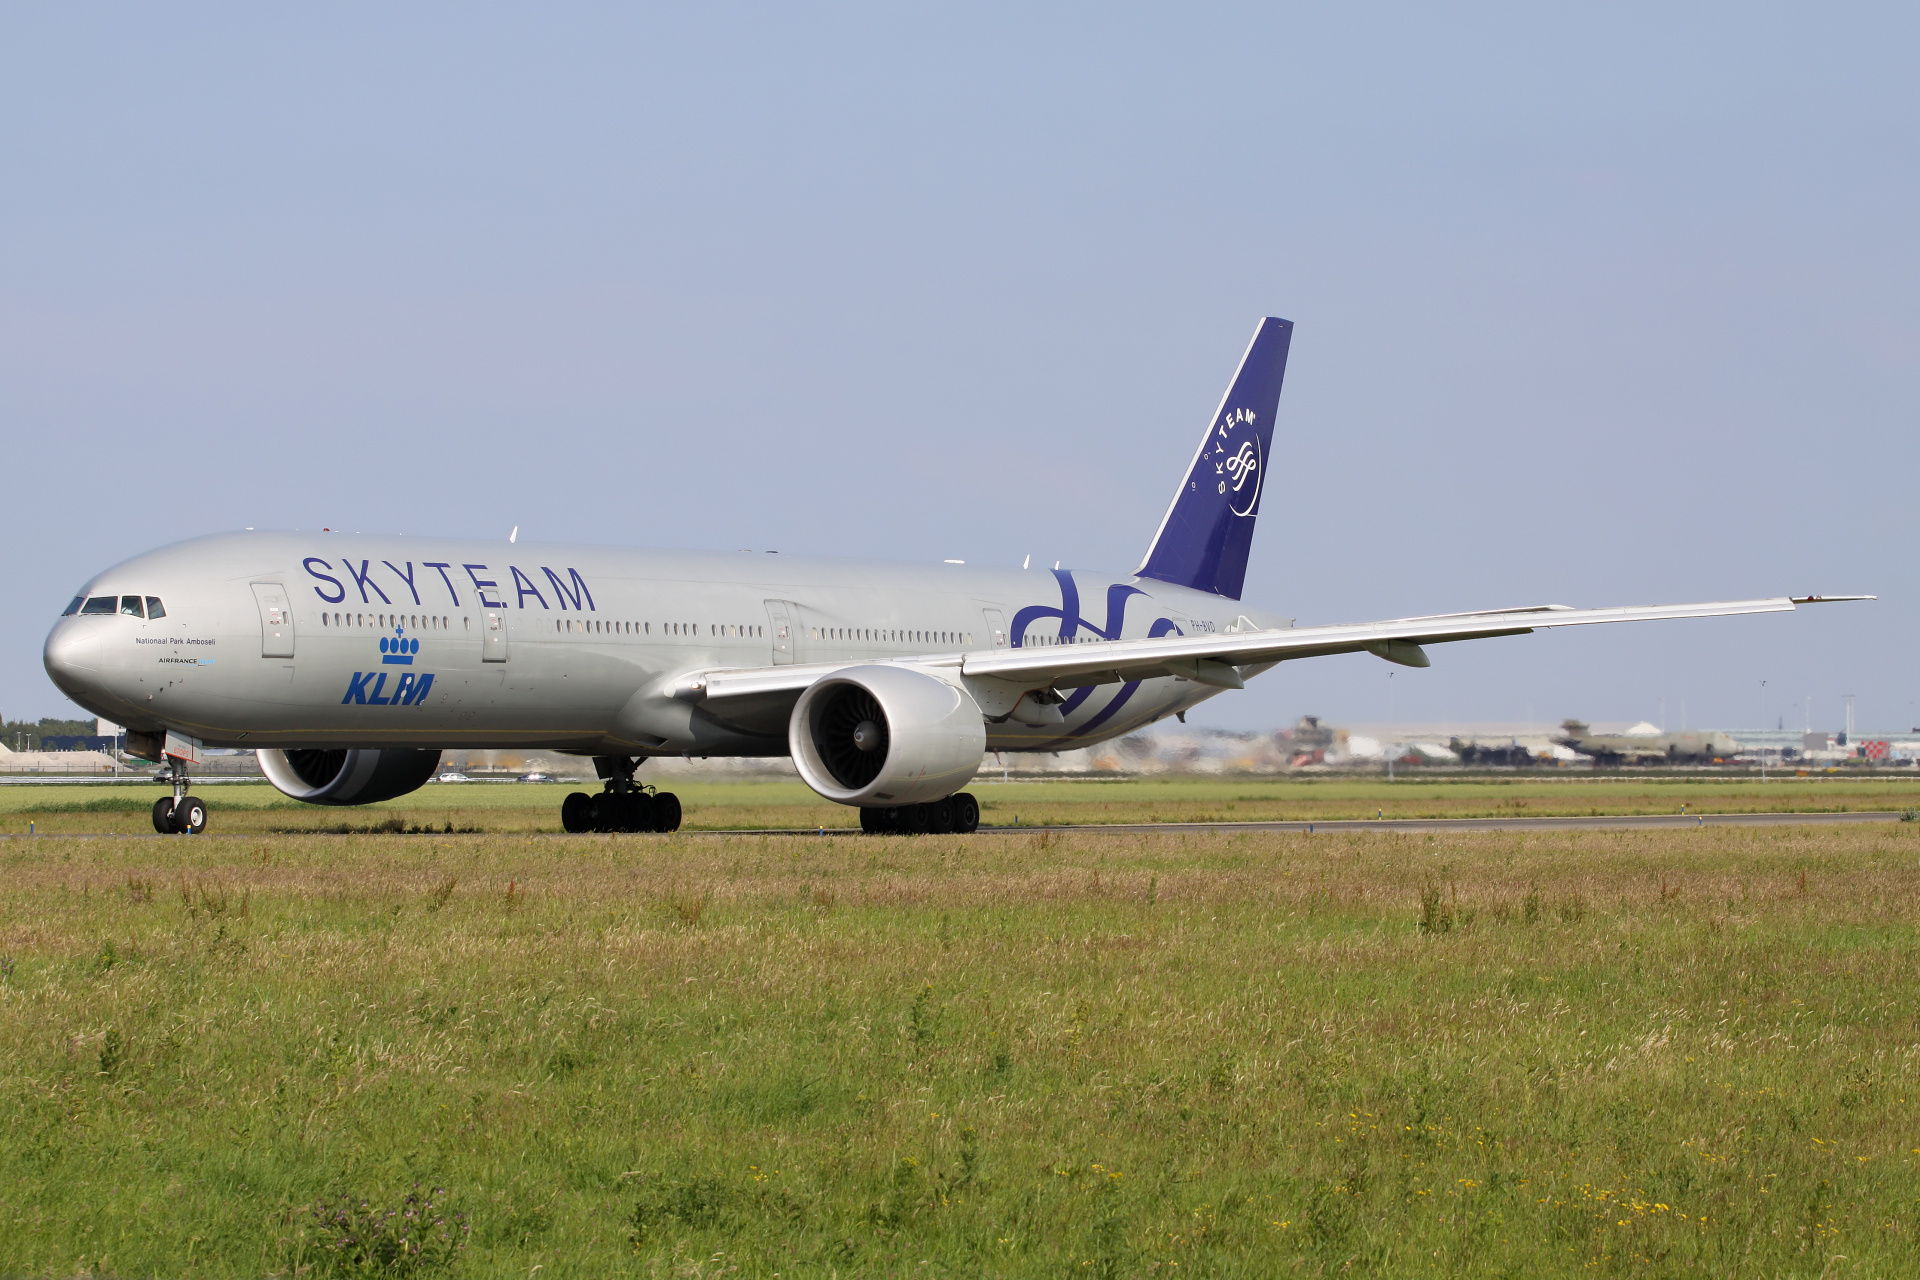 PH-BVD (malowanie SkyTeam) (Samoloty » Spotting na Schiphol » Boeing 777-300ER » KLM Royal Dutch Airlines)